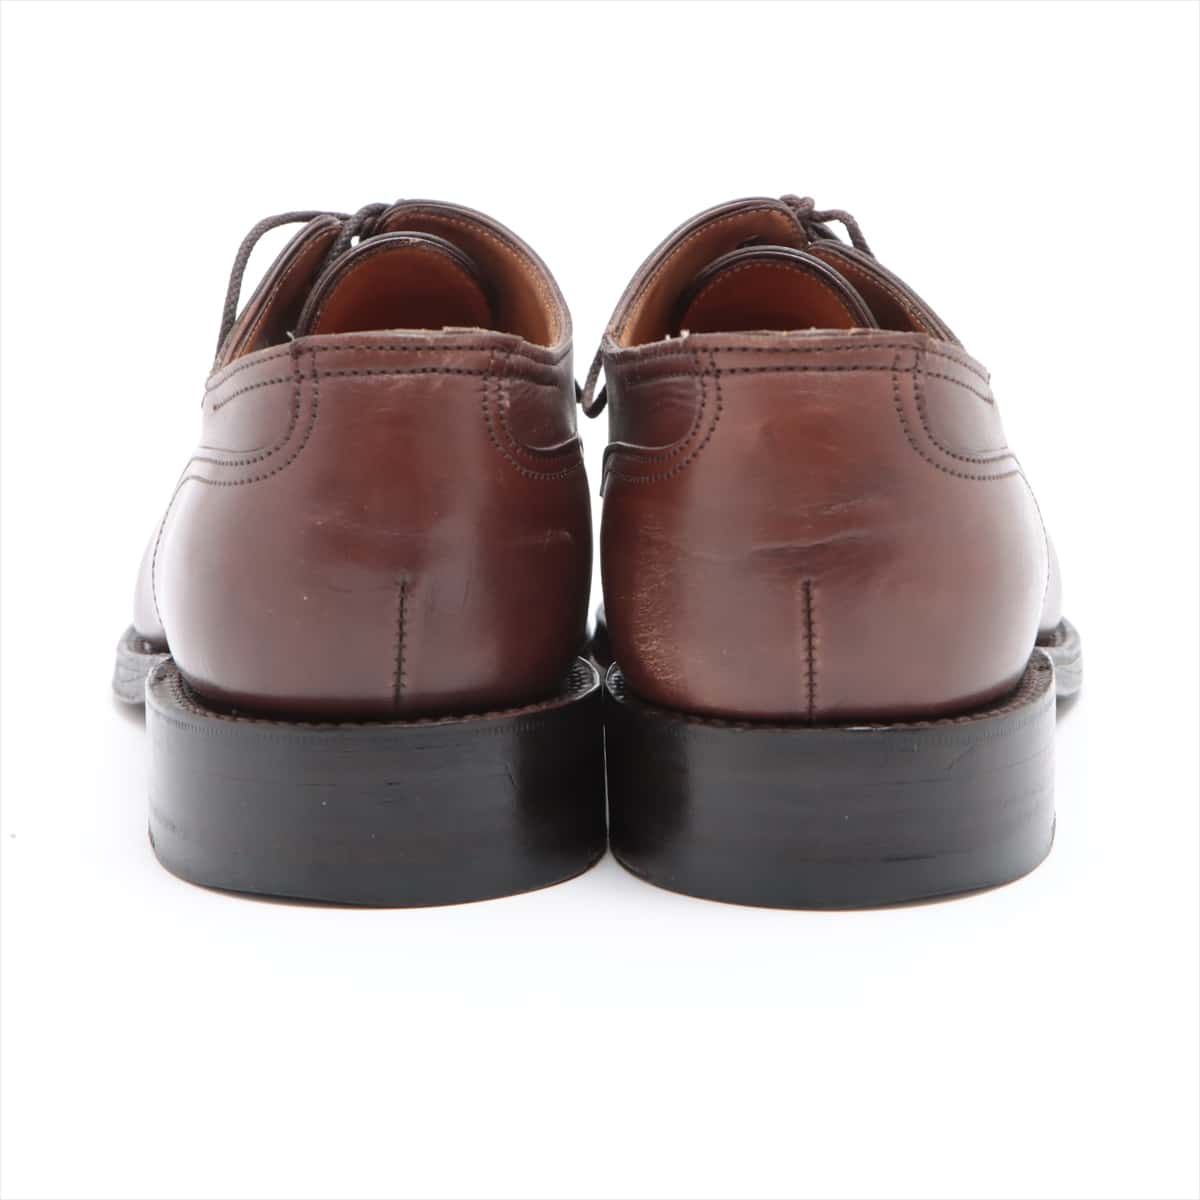 John Lobb Chambord Leather Dress shoes 6E Men's Brown CHAMBORD Last 8695